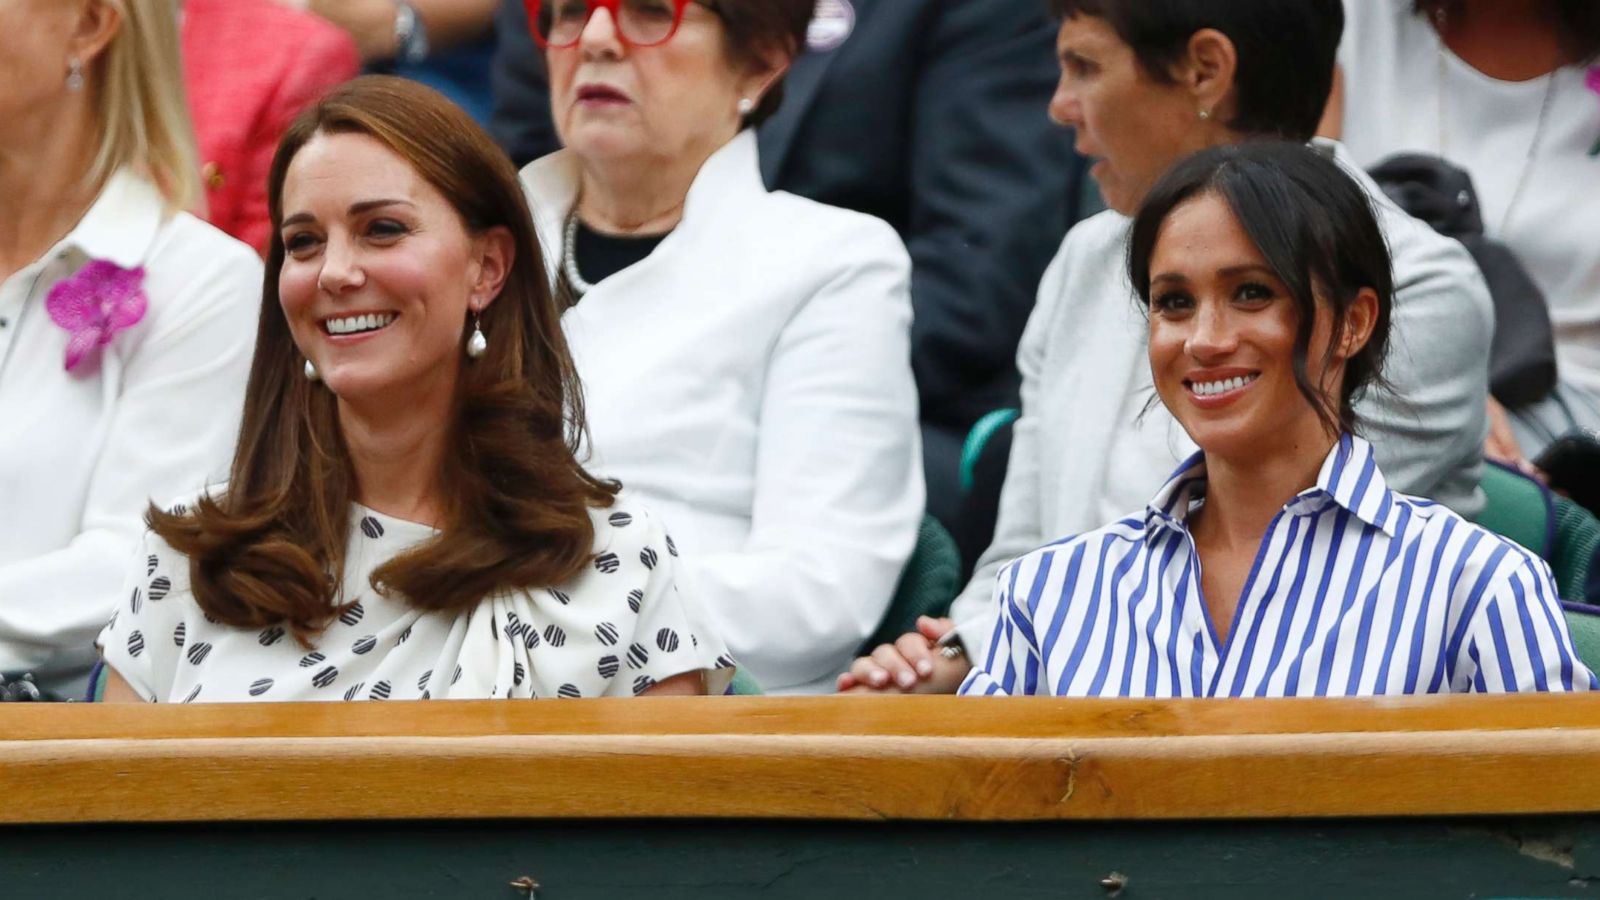 Princess Kate, Duchess Meghan attend Wimbledon to watch Serena Williams match